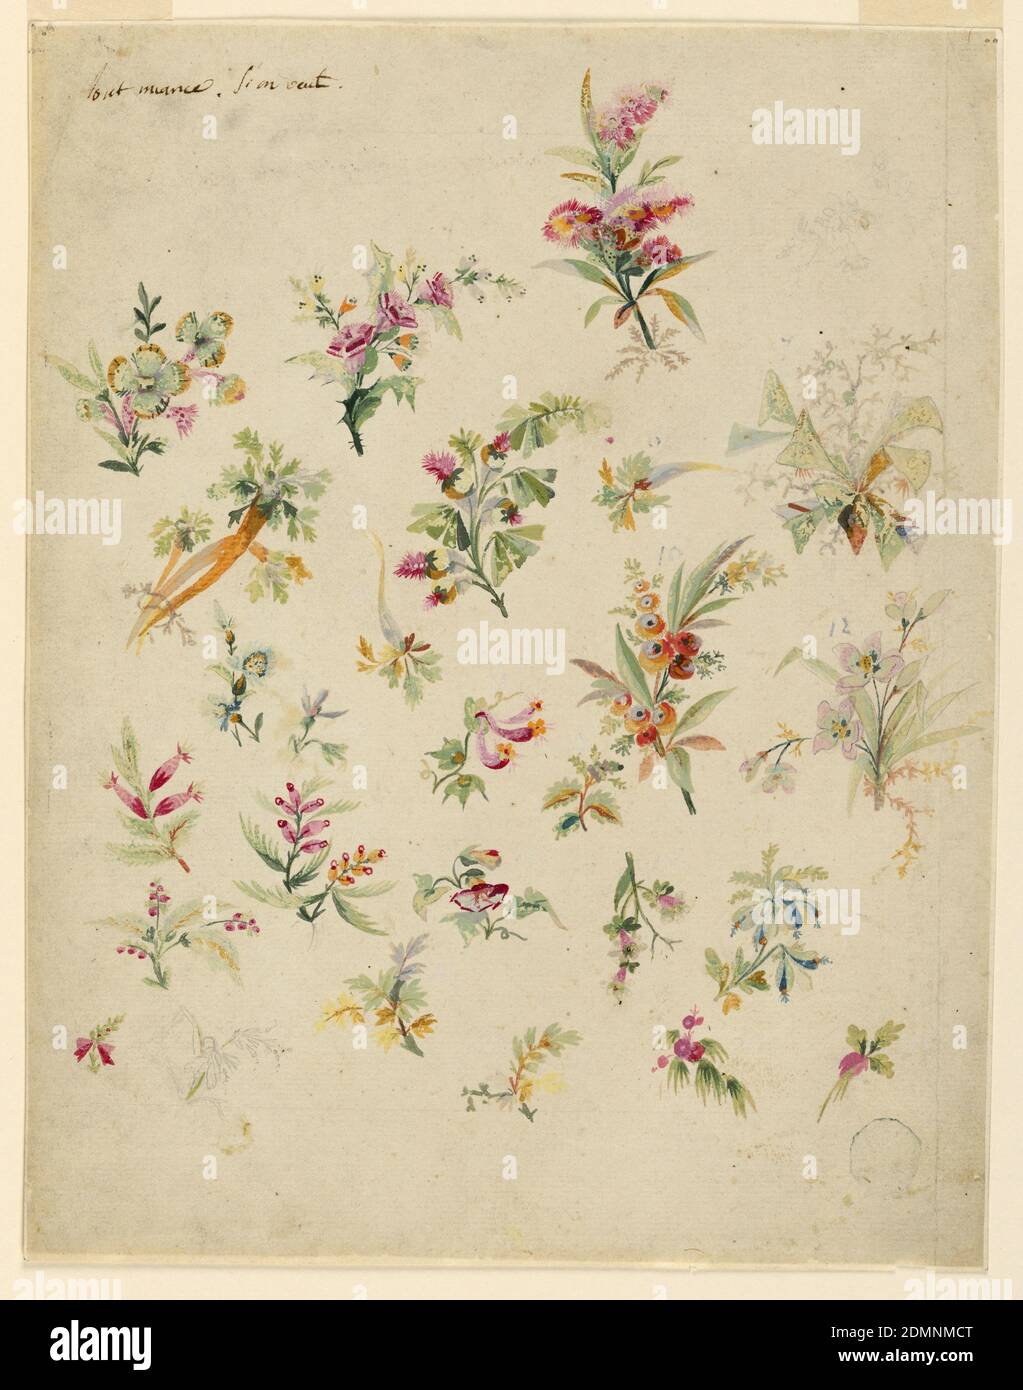 Motivos florales bordados fotografías e imágenes de alta resolución - Alamy